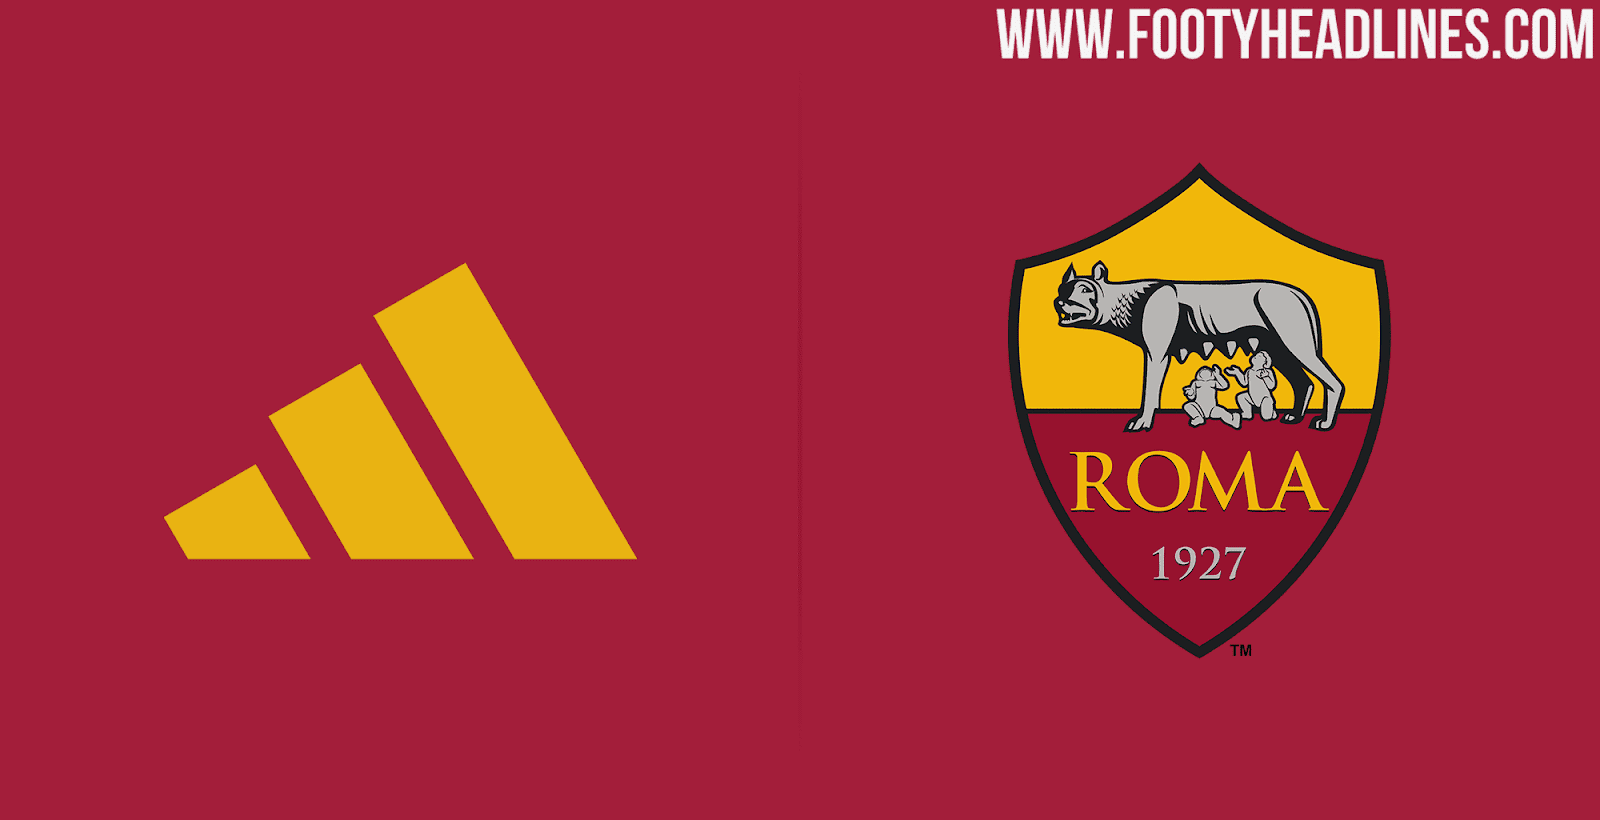 Exklusiv: Adidas AS Roma Trikot-Deal bestätigt - Nur Fussball